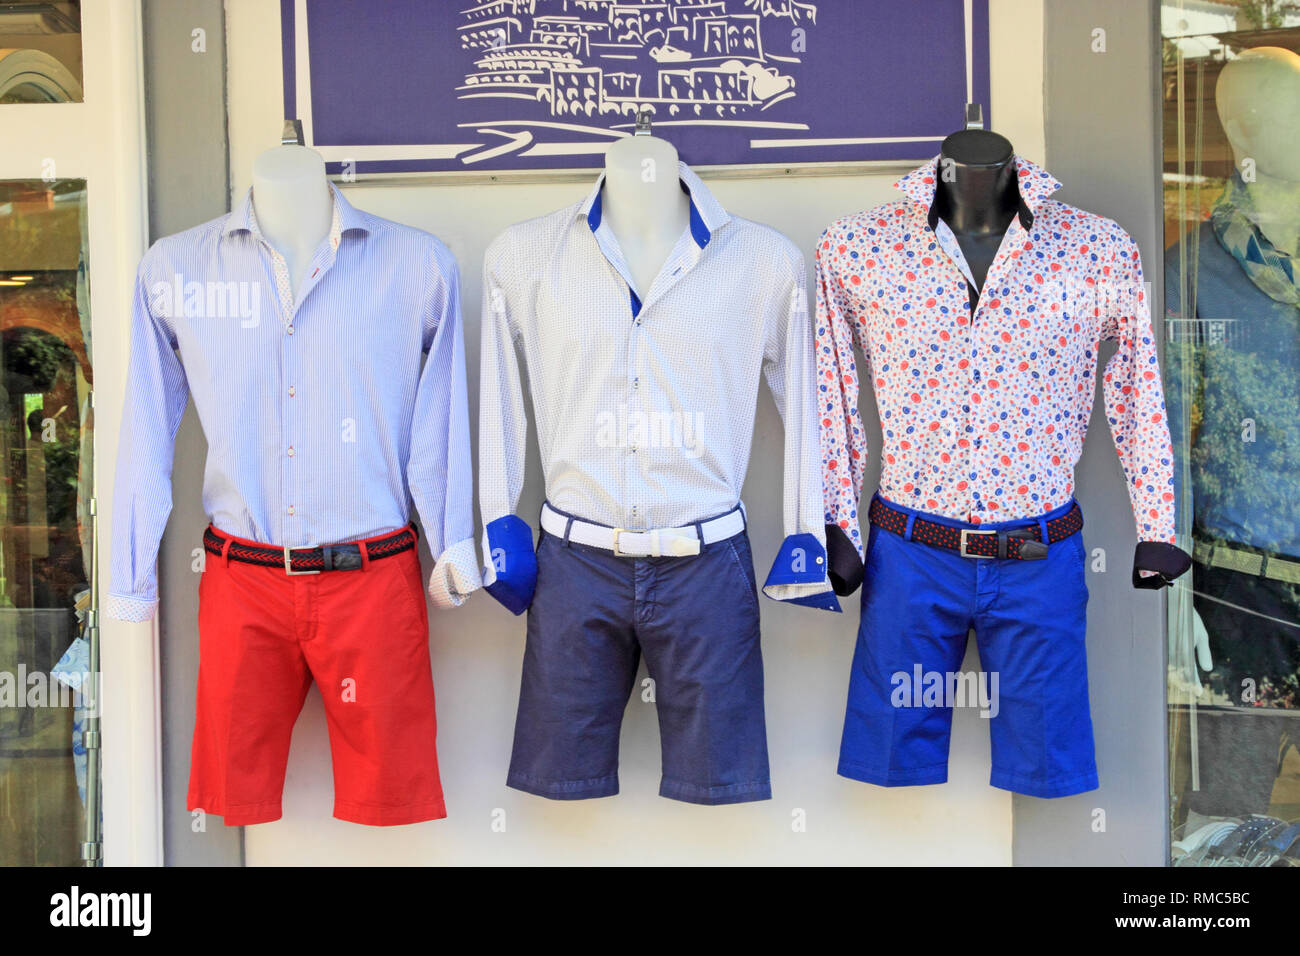 Mens shirts and shorts display Stock Photo